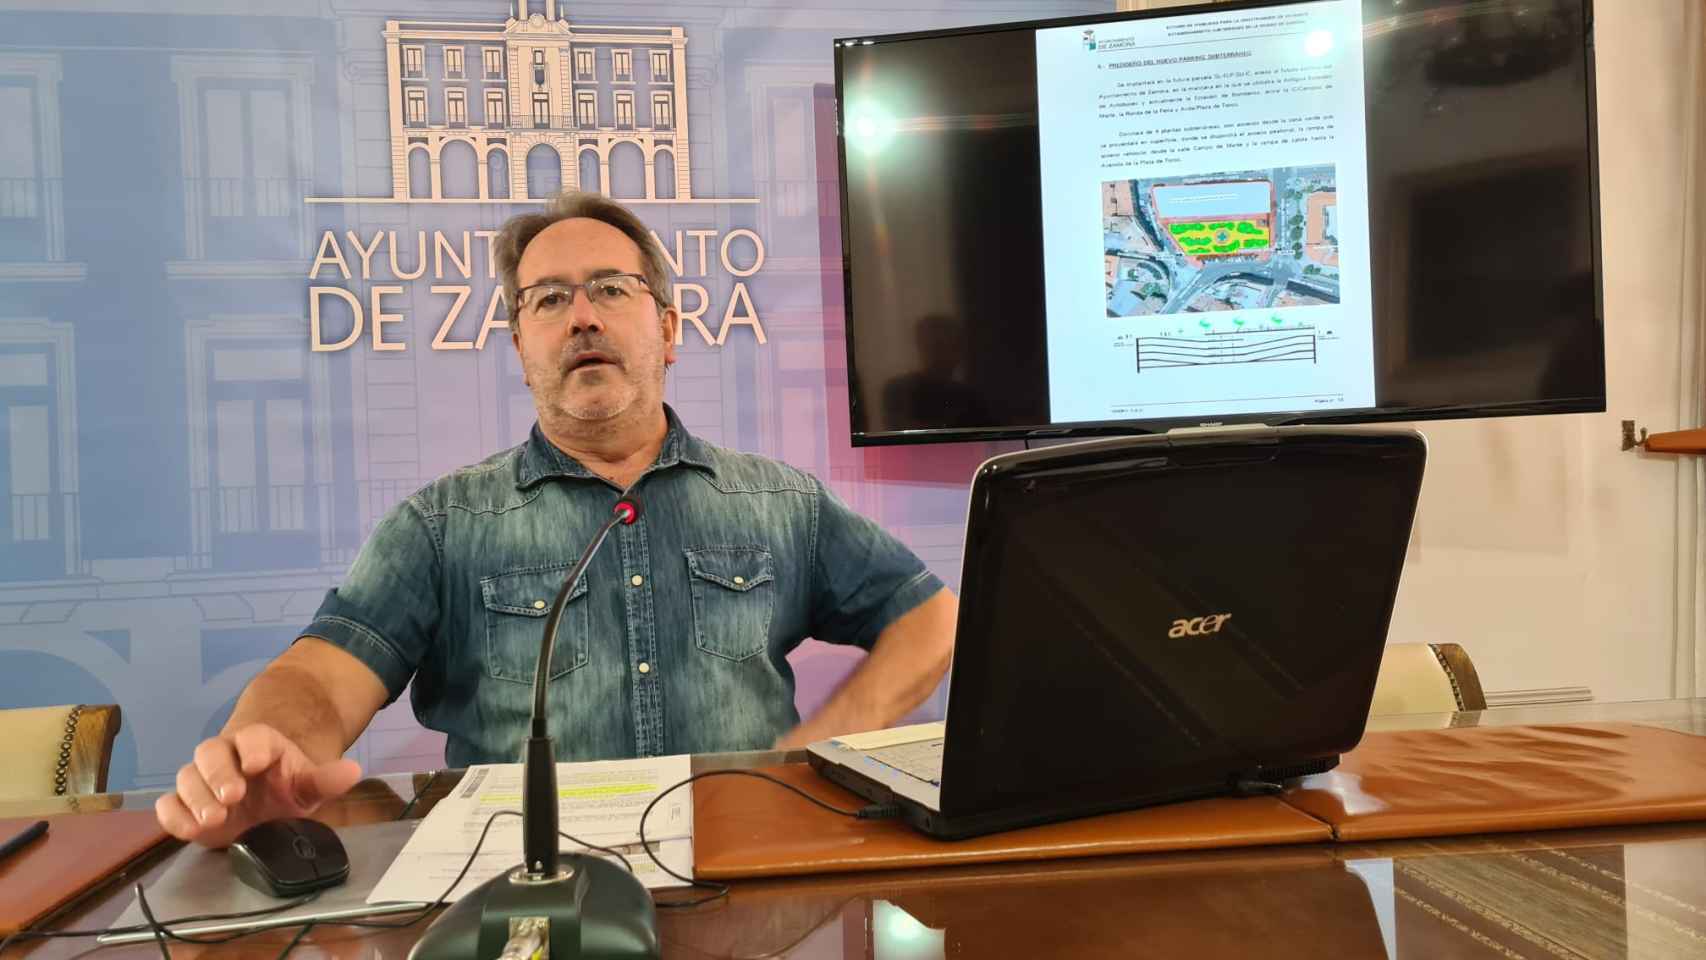 El alcalde de Zamora, Francisco Guarido, presenta el proyecto para construir un nuevo aparcamiento subterráneo en Zamora